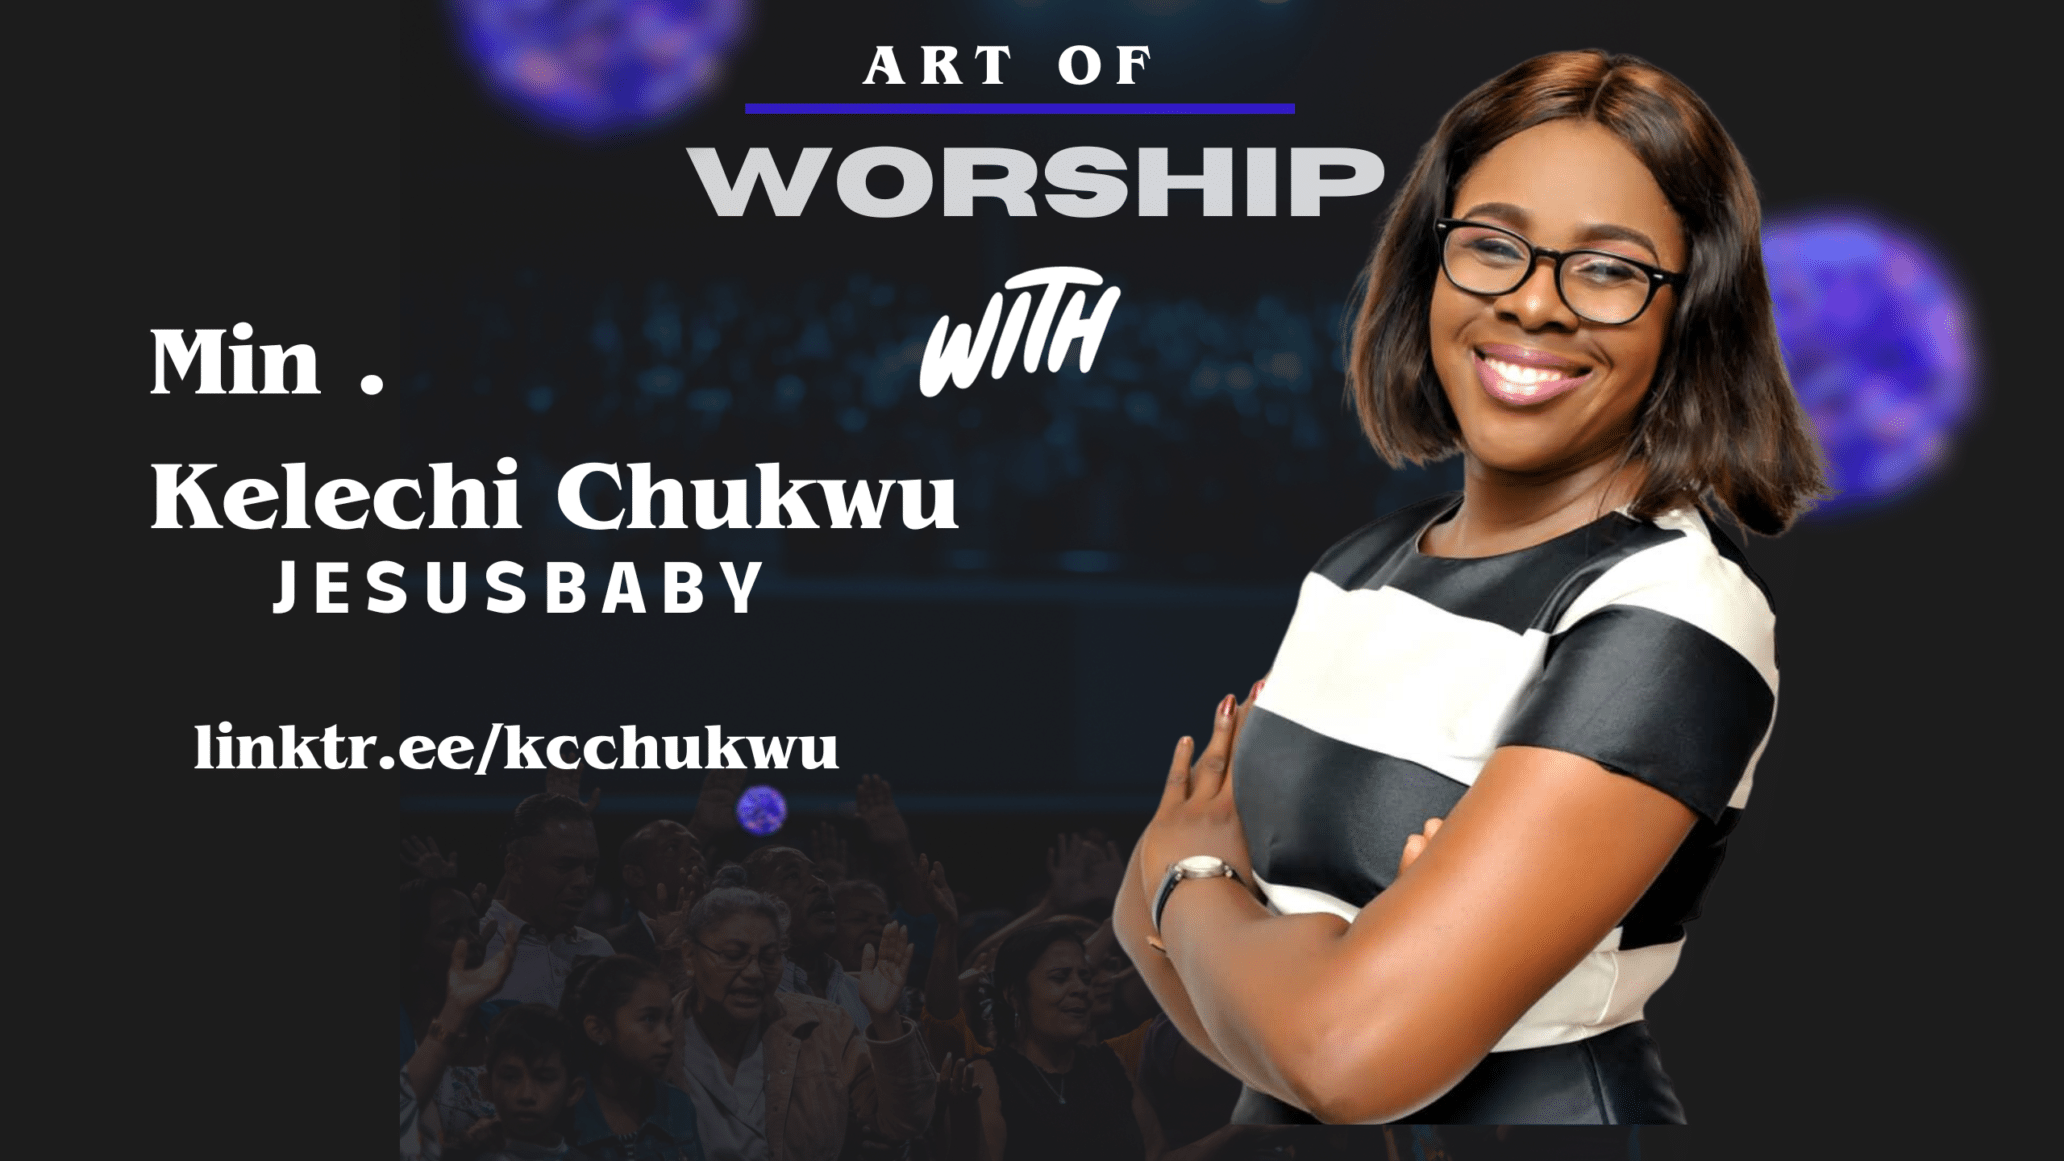 Art of Worship with Minister Kelechi Chukwu 1